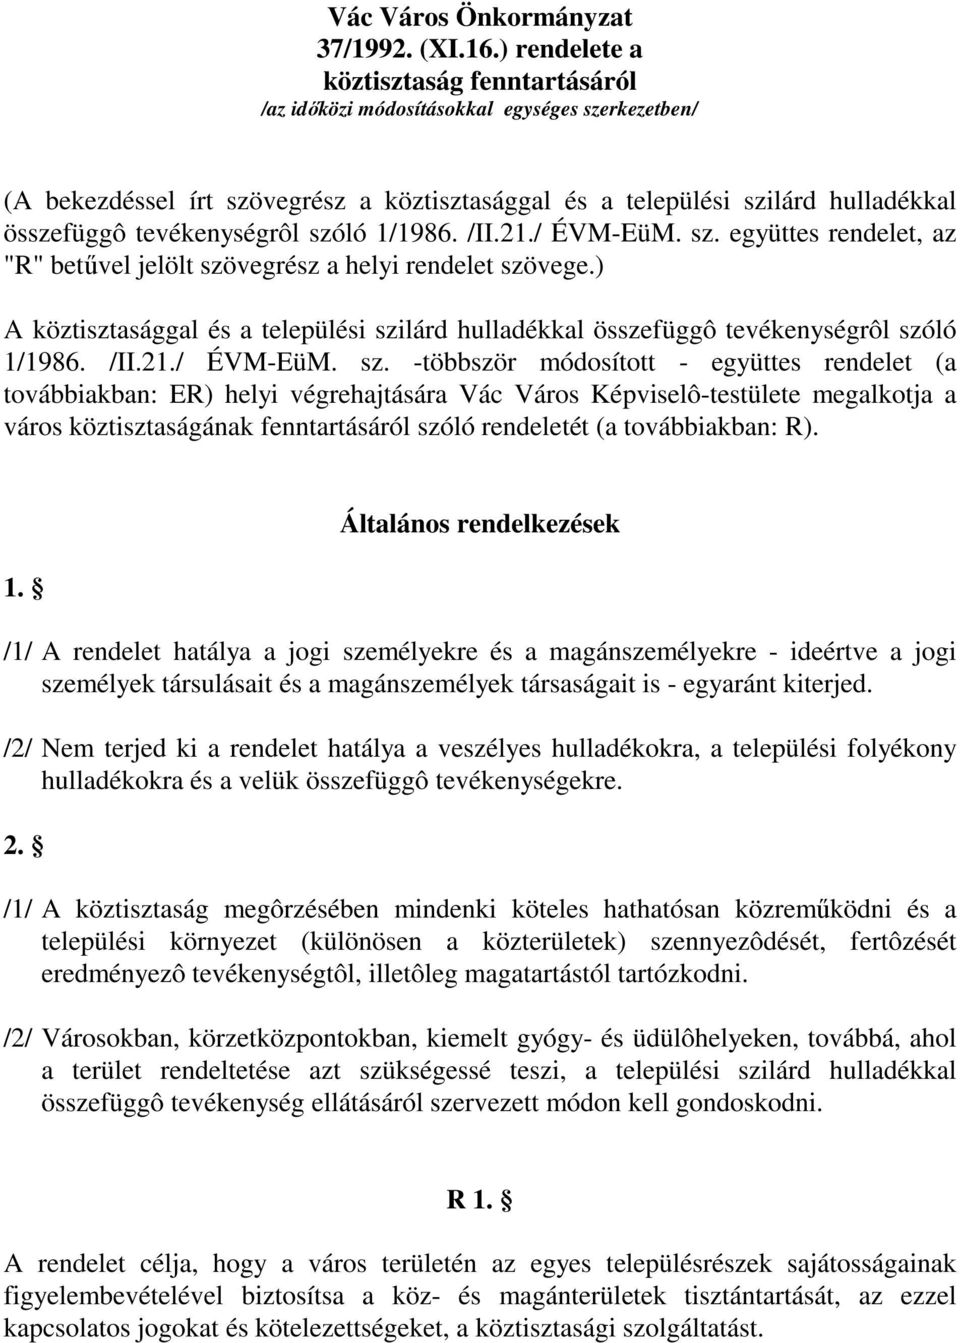 tevékenységrôl szóló 1/1986. /II.21./ ÉVM-EüM. sz. együttes rendelet, az "R" betűvel jelölt szövegrész a helyi rendelet szövege.